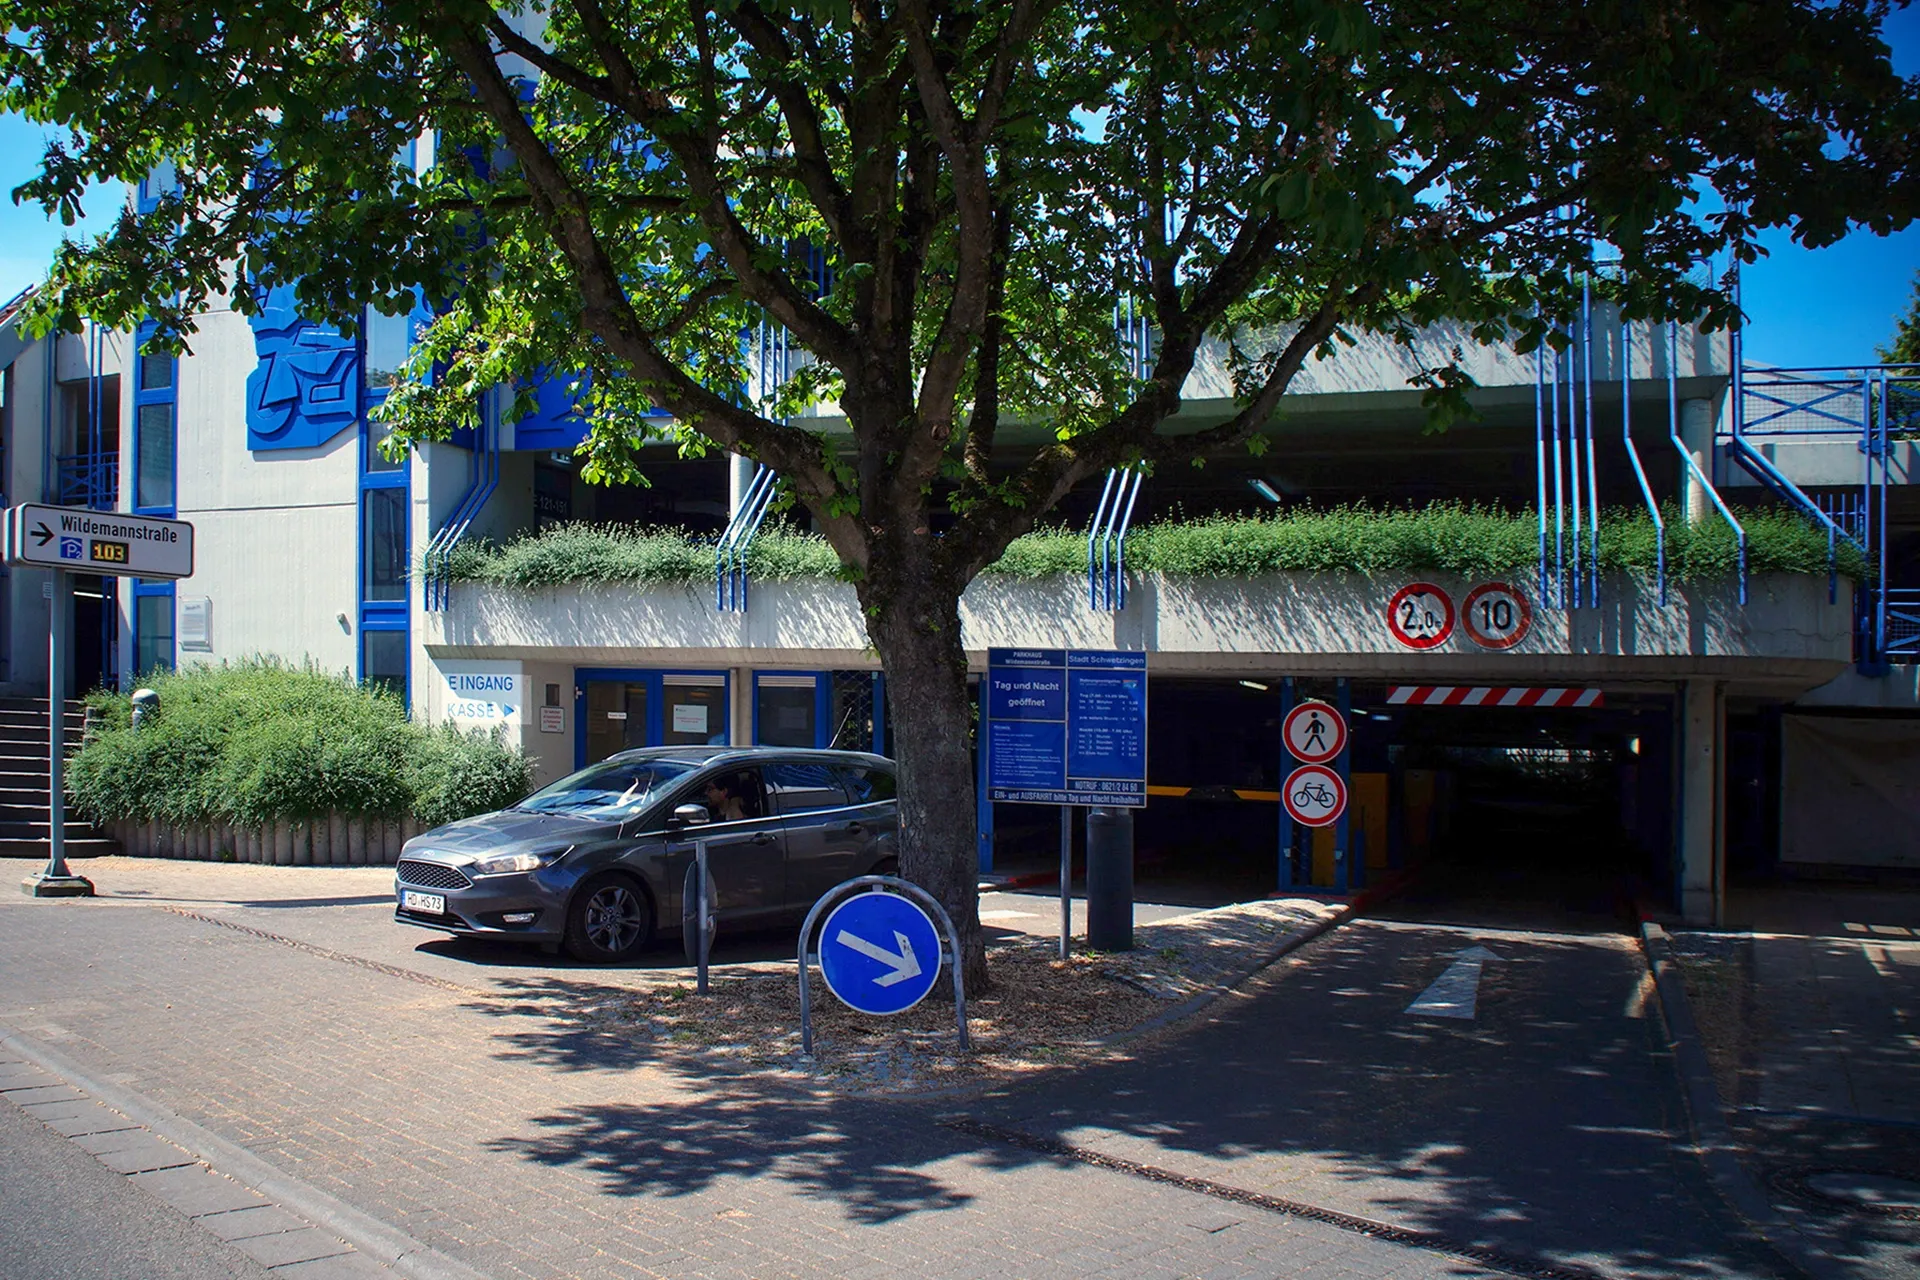 Wildemannstraße, Parkhaus